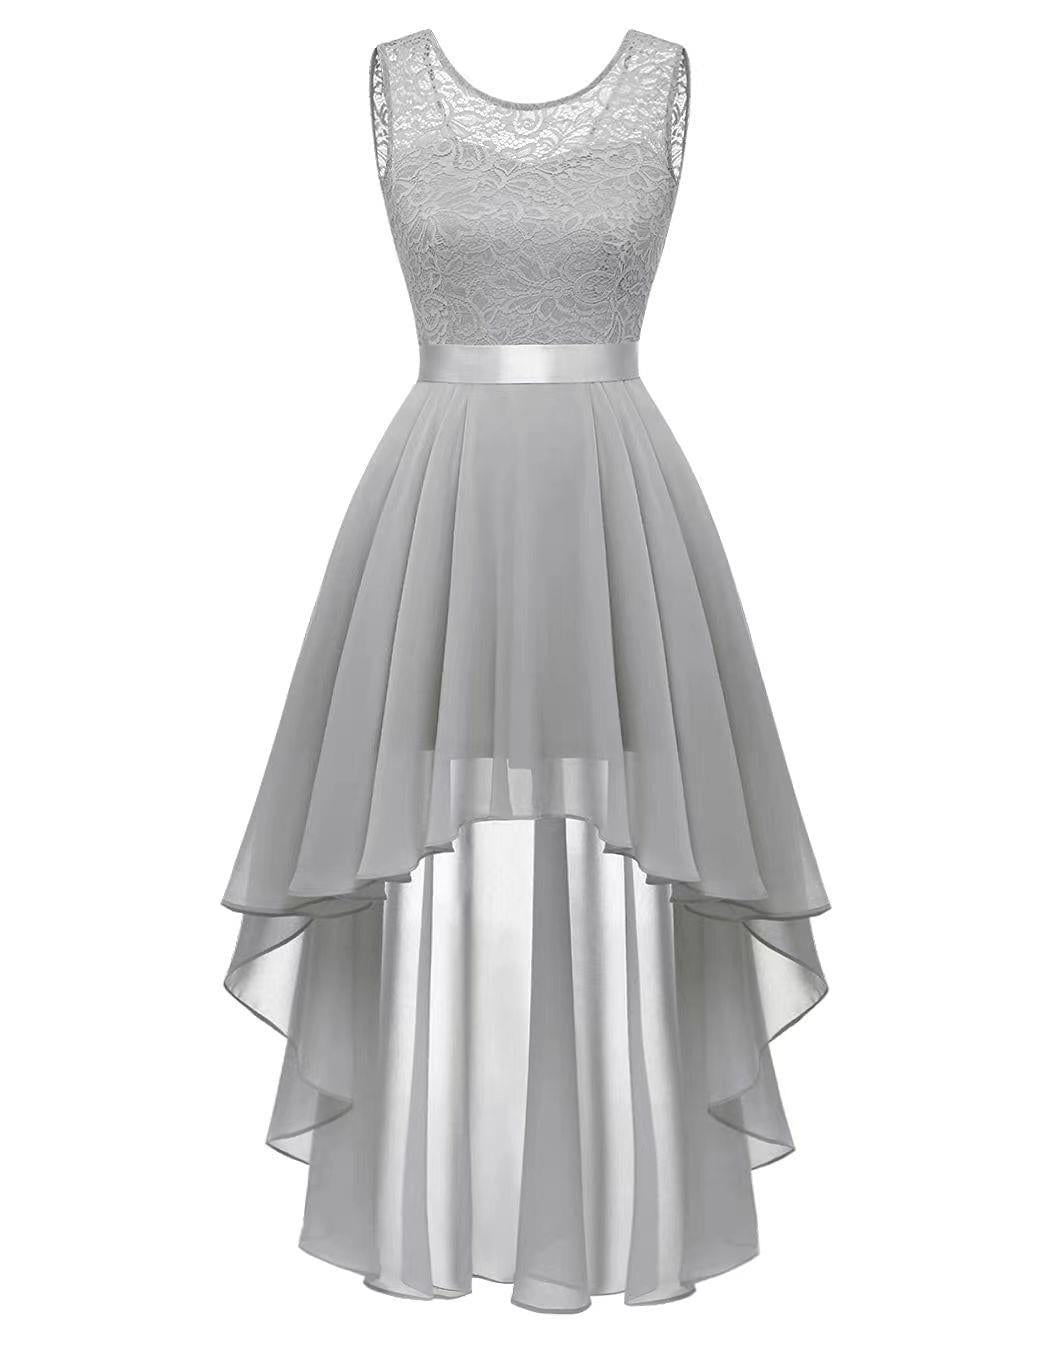 Lace Splicing Chiffon Dress